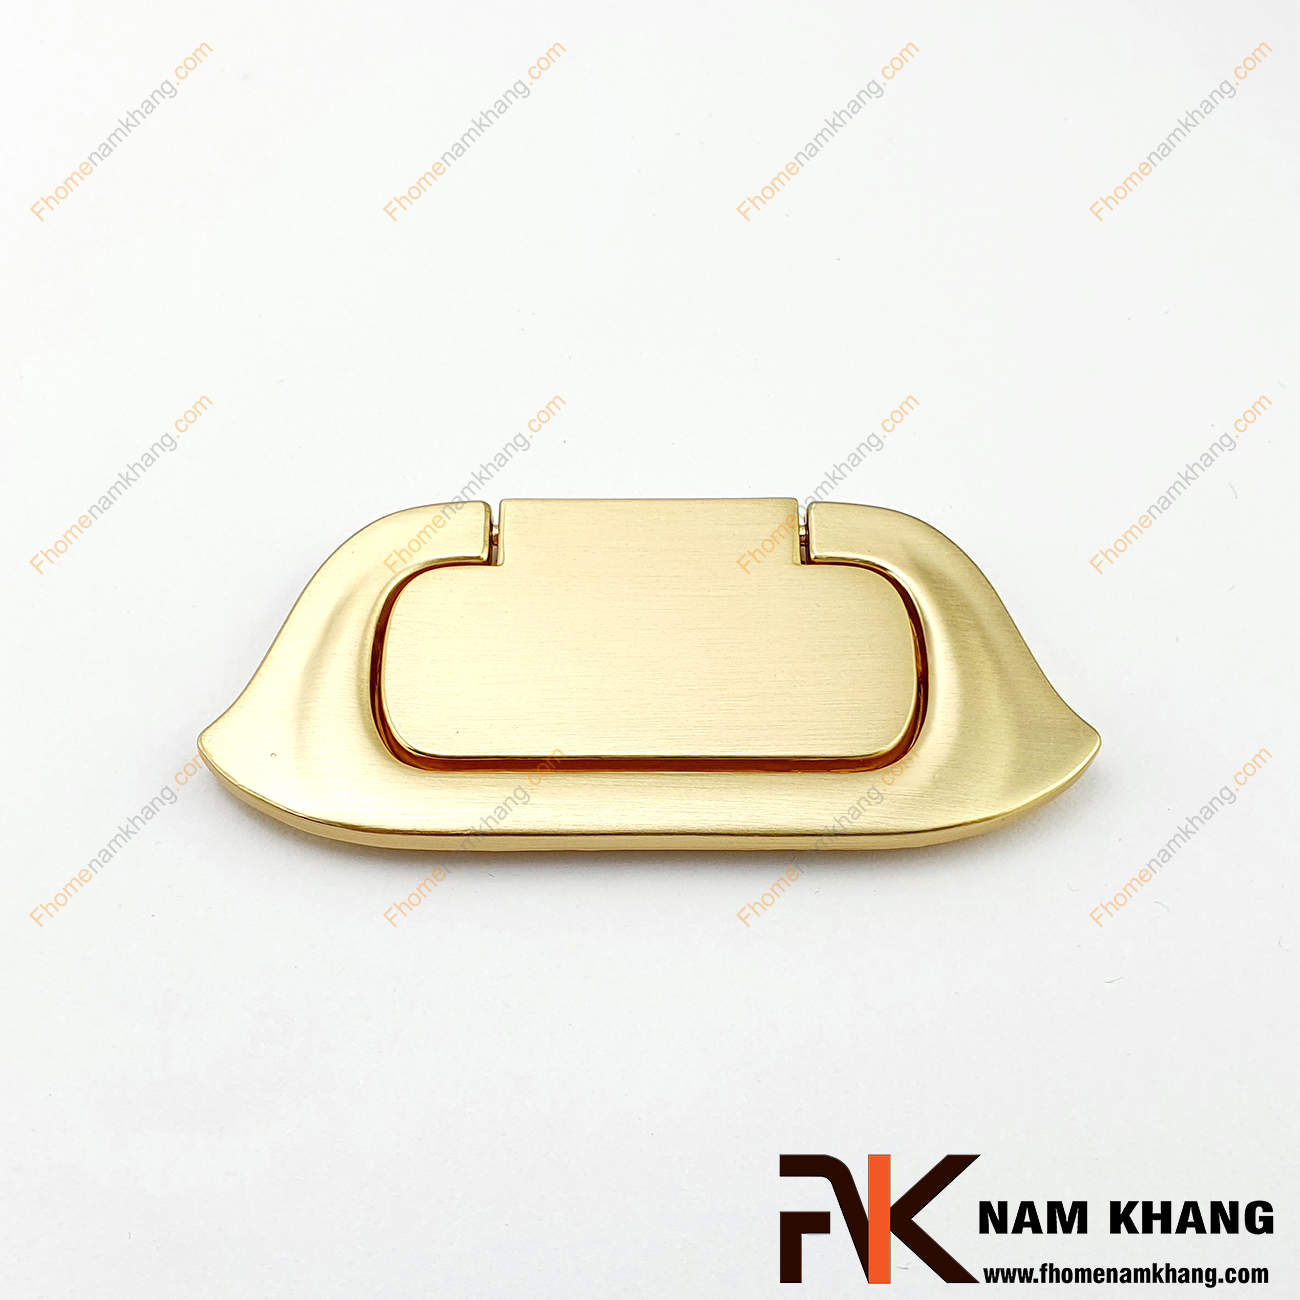 Núm cửa tủ dạng vòng màu vàng mờ cao cấp NK130S-VM có một nét thiết kế độc đáo trên nền chất liệu hợp kim cao cấp